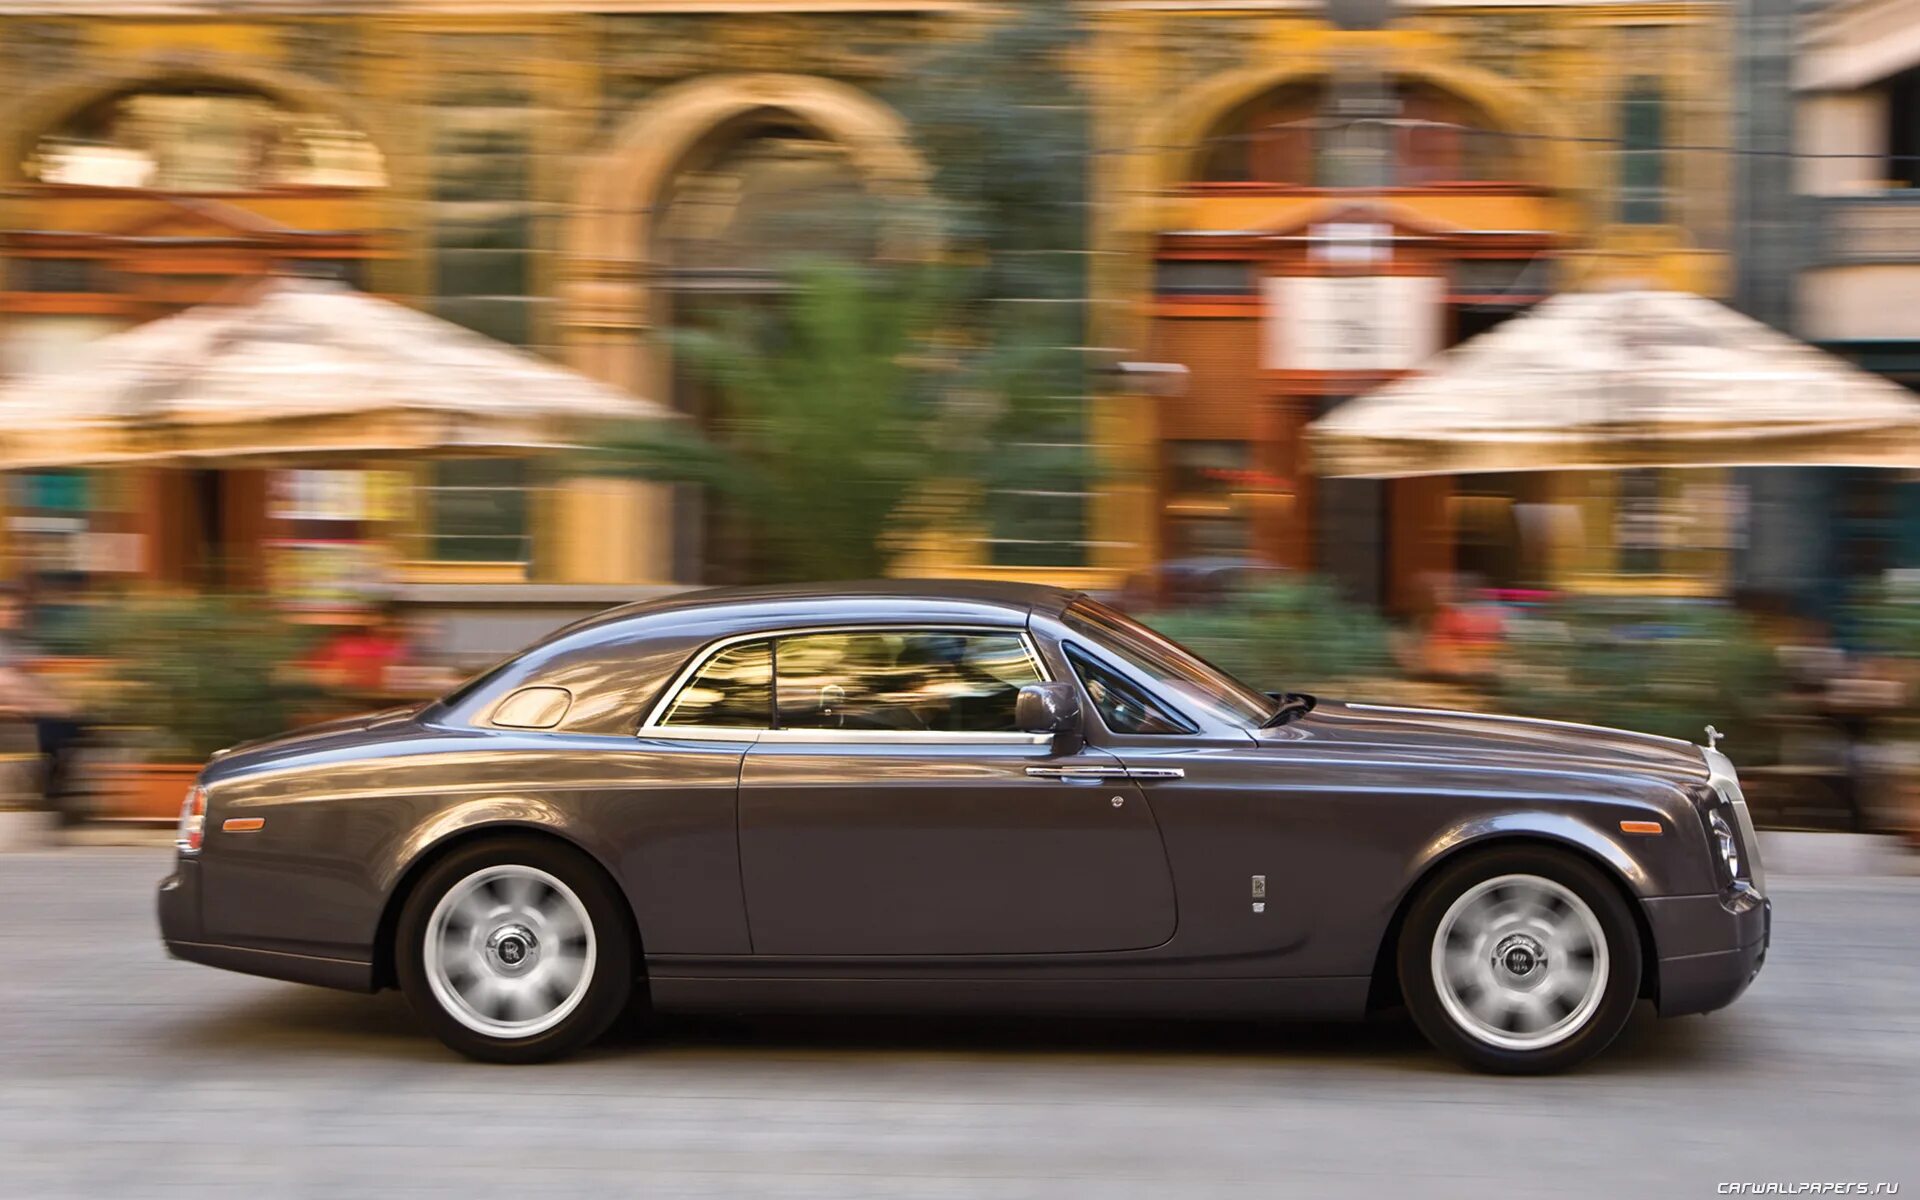 Роллс купе. Rolls Royce Phantom купе. Rolls Royce Phantom Coupe 2008. Rolls Royce Phantom Coupe 2009. Роллс Ройс купить.